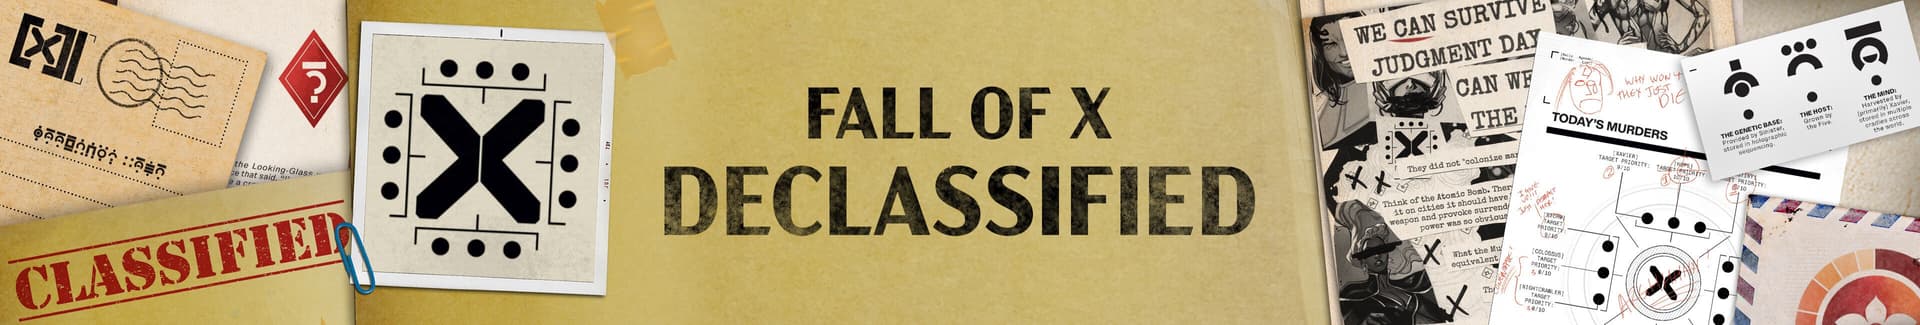 declassified-banner